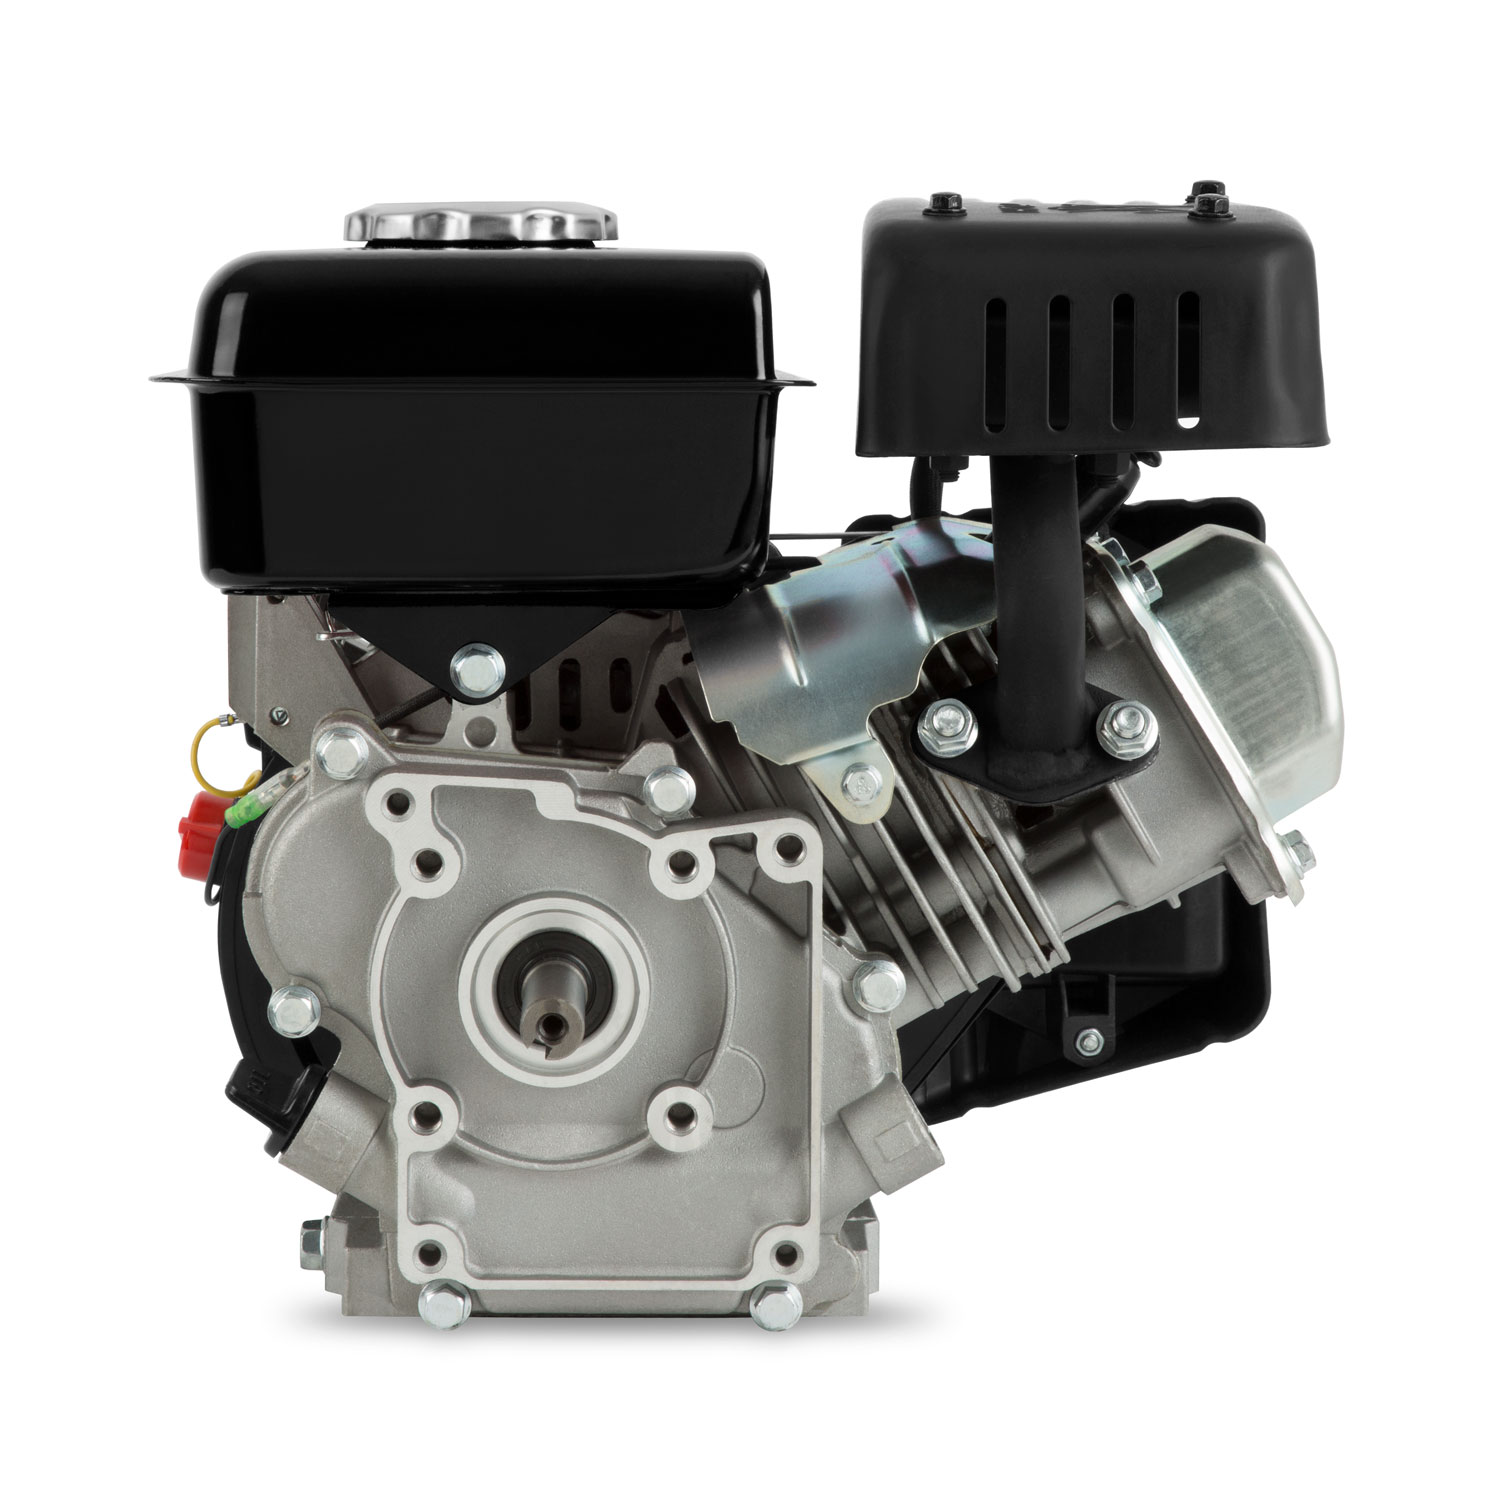 EBERTH 13 PS 9,56 kW Benzinmotor Standmotor Kartmotor Antriebsmotor mit 25  mm Ø Welle, E-Start, 17ah 12V Batterie, Ölmangelsicherung, 4-Takt, 1  Zylinder Industriemotor, 389 ccm Hubraum, luftgekühlt